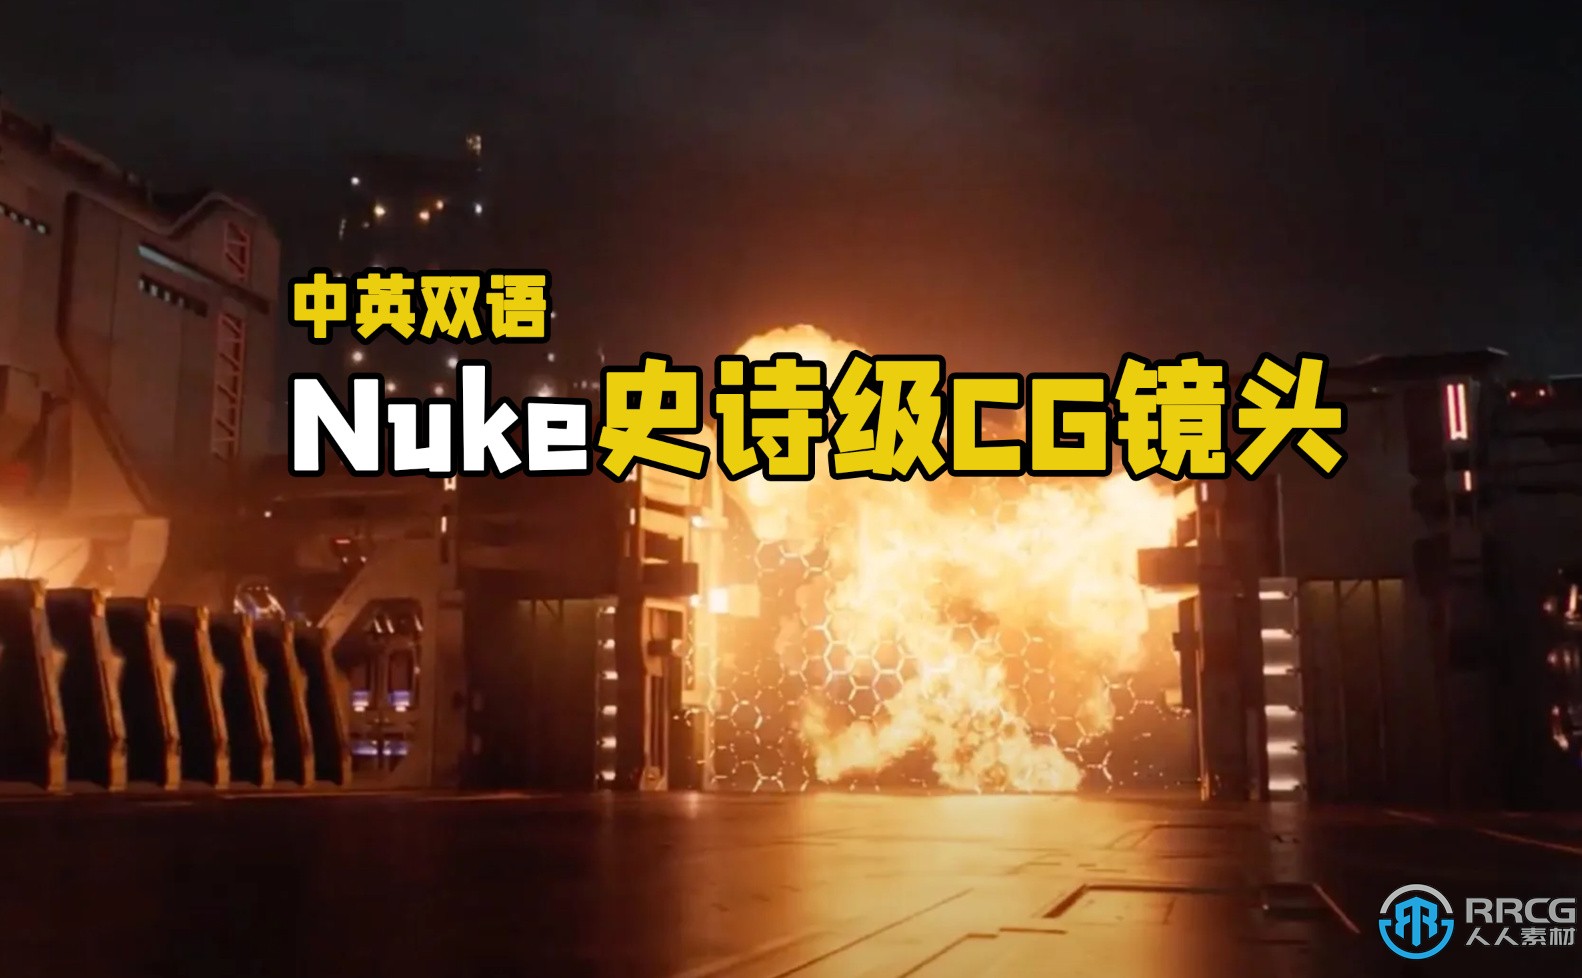 【中文字幕】Nuke史诗级FX特效合成CG镜头制作大师级视频教程